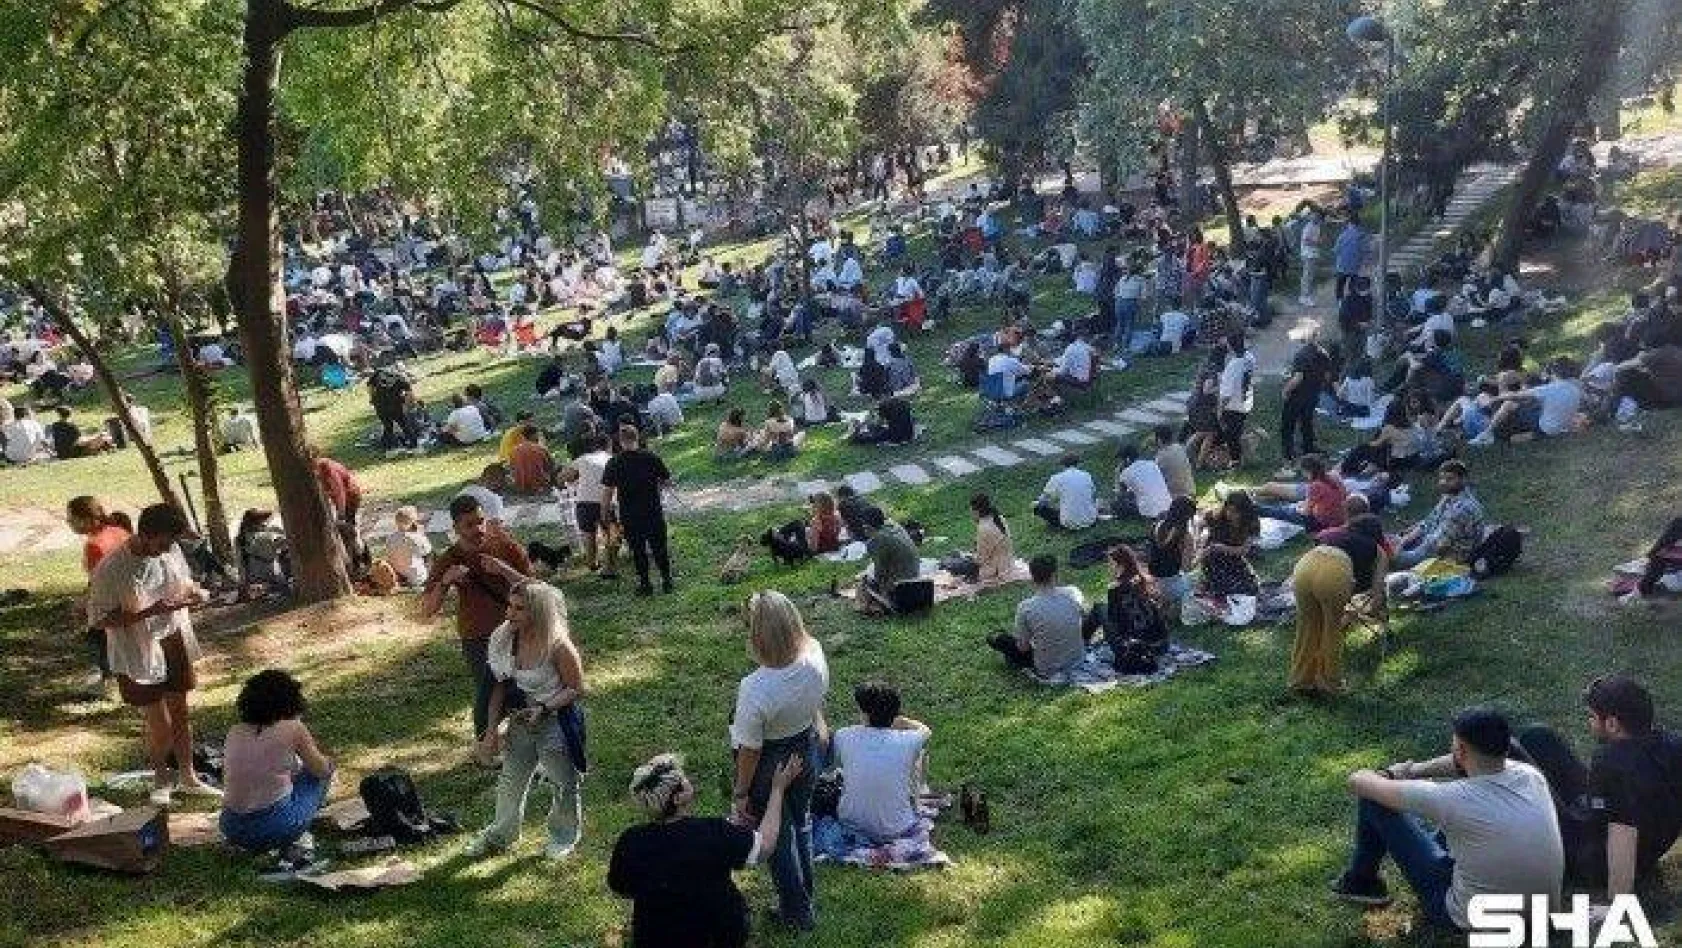 Maçka Parkı'nda korkutan görüntü: Binlerce kişi Maçka Parkı'na akın etti